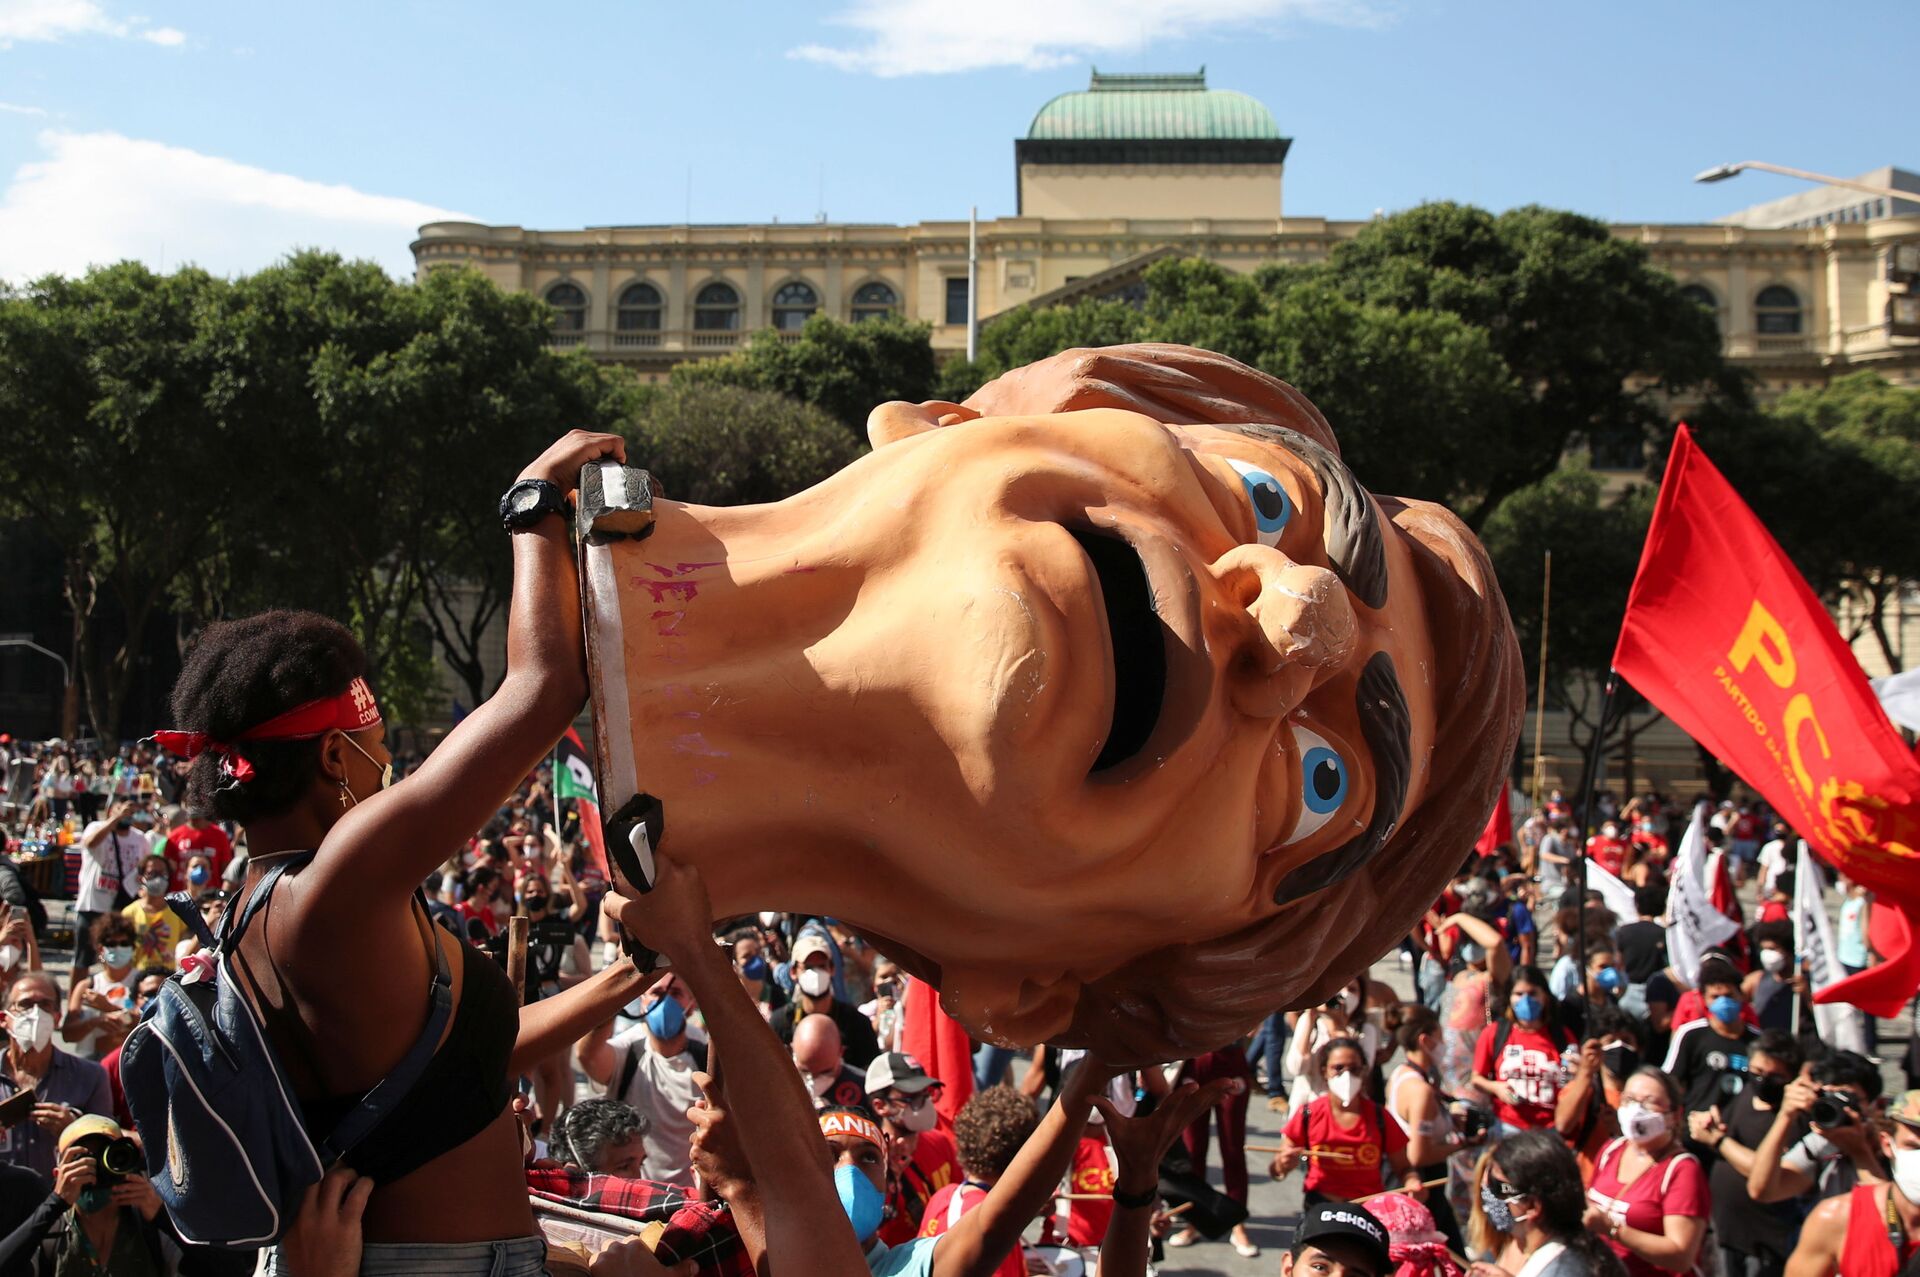 Protestos no Brasil: Bolsonaro quer 'reconfigurar o Estado' e não precisa de golpe, diz analista - Sputnik Brasil, 1920, 01.06.2021